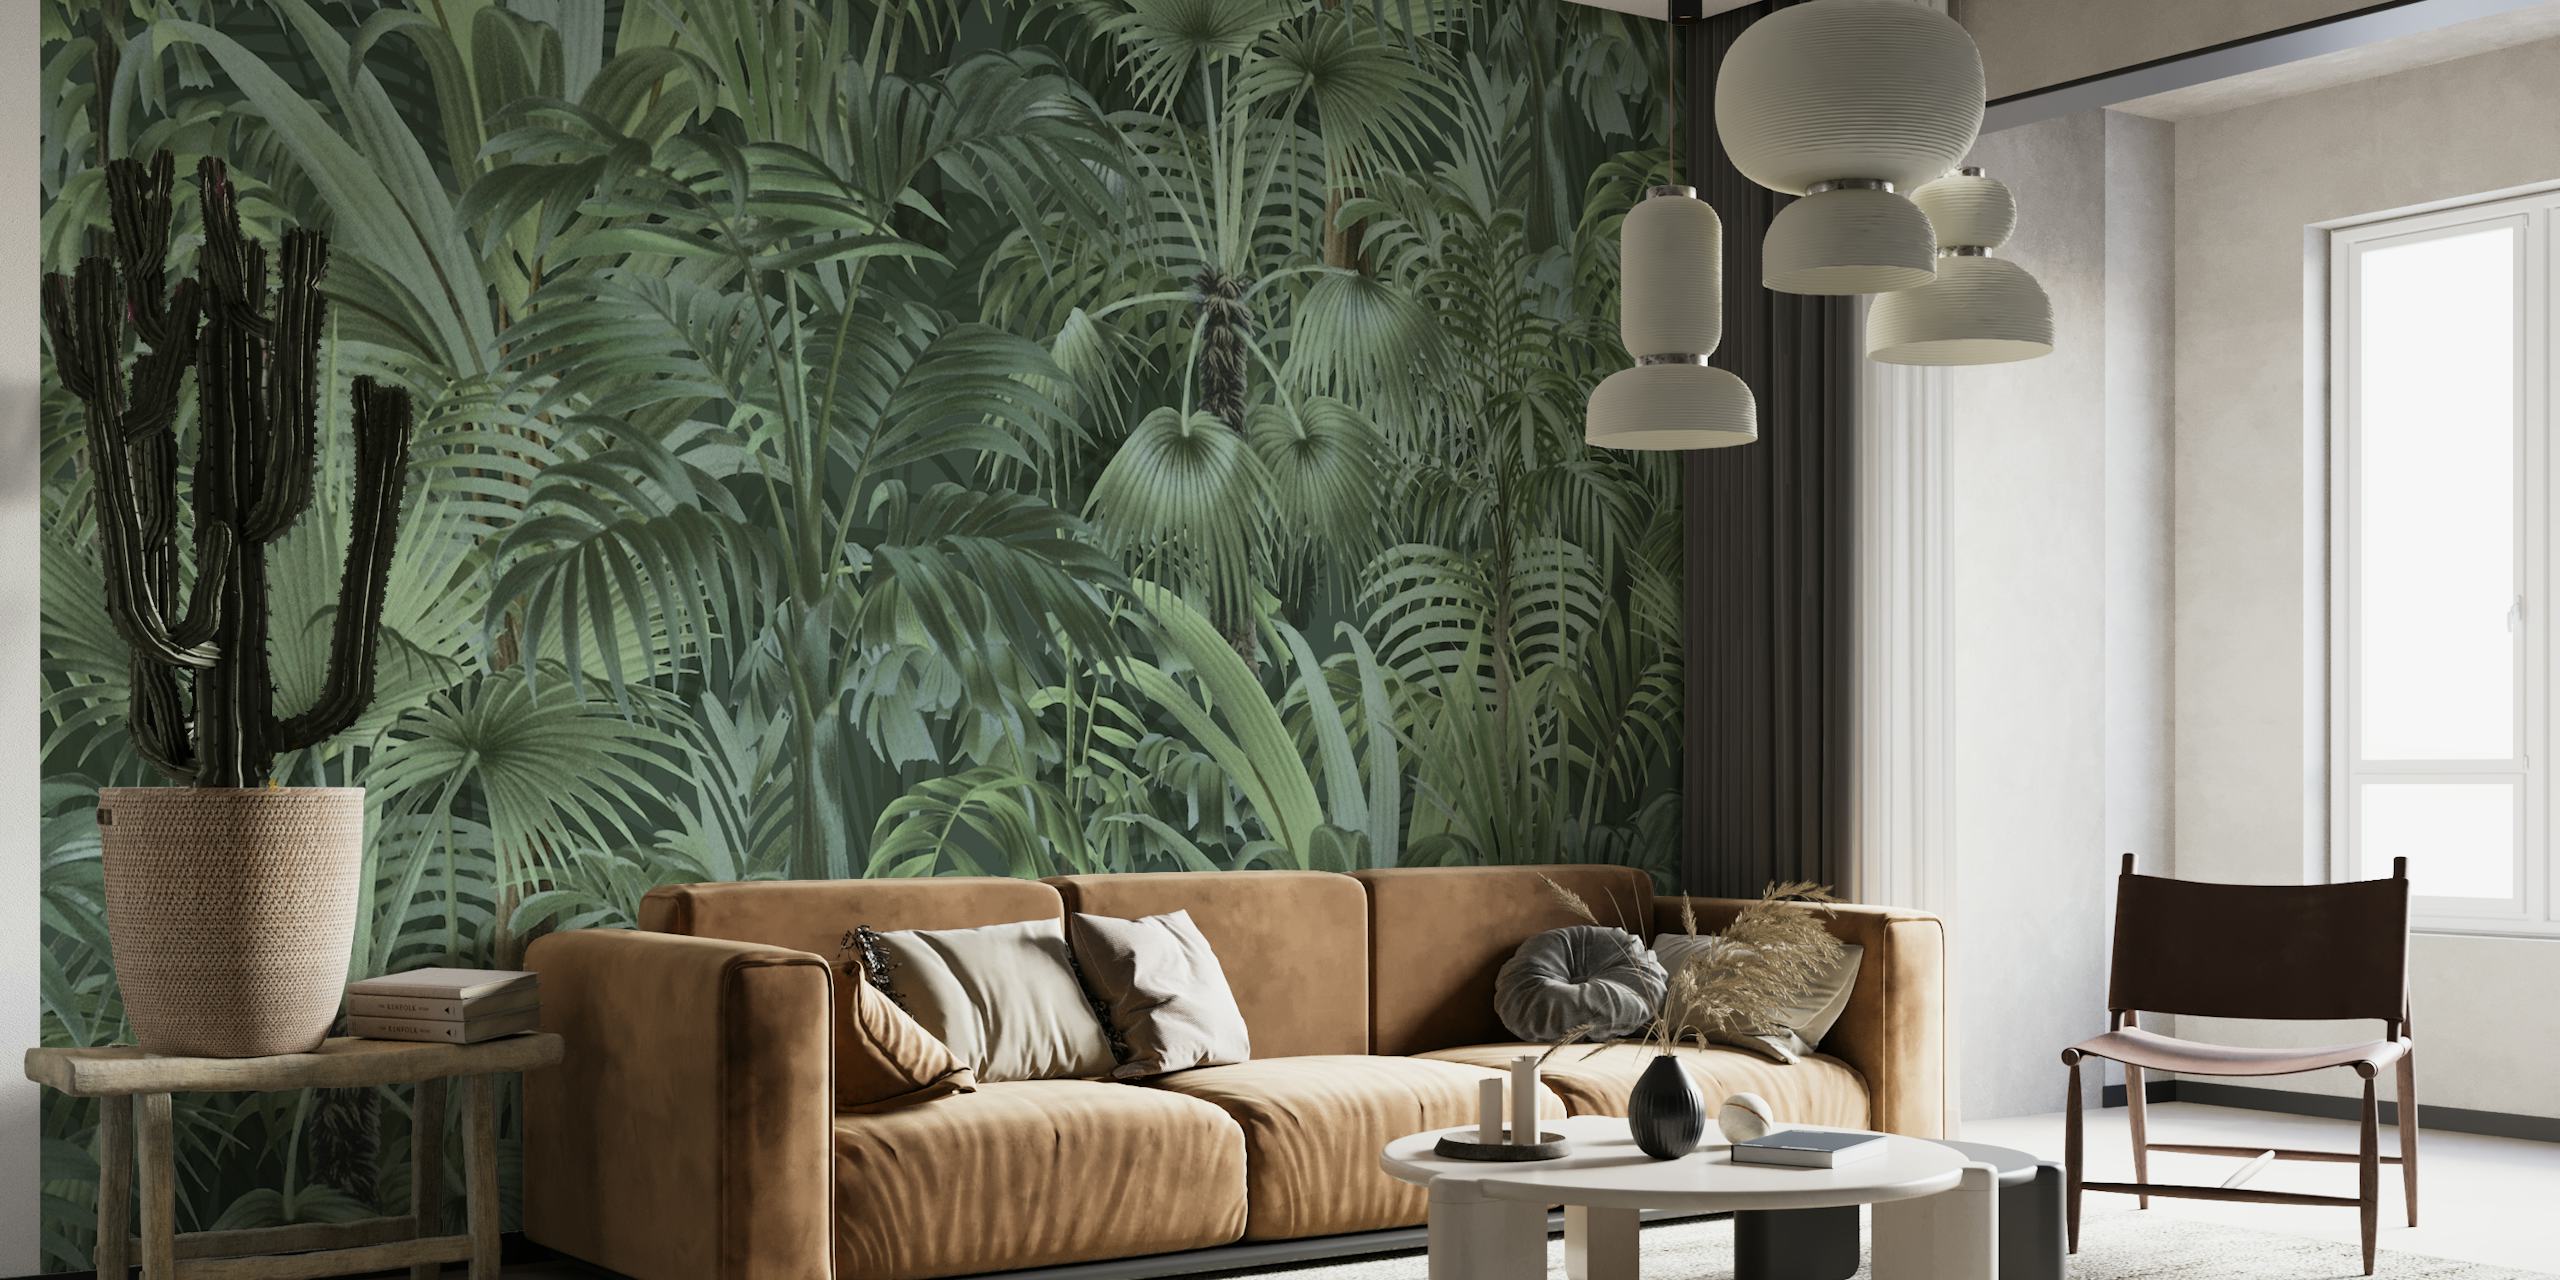 Väggmålning med tät tropisk lövverk med varierande gröna nyanser som skapar en förtrollande djungelatmosfär.